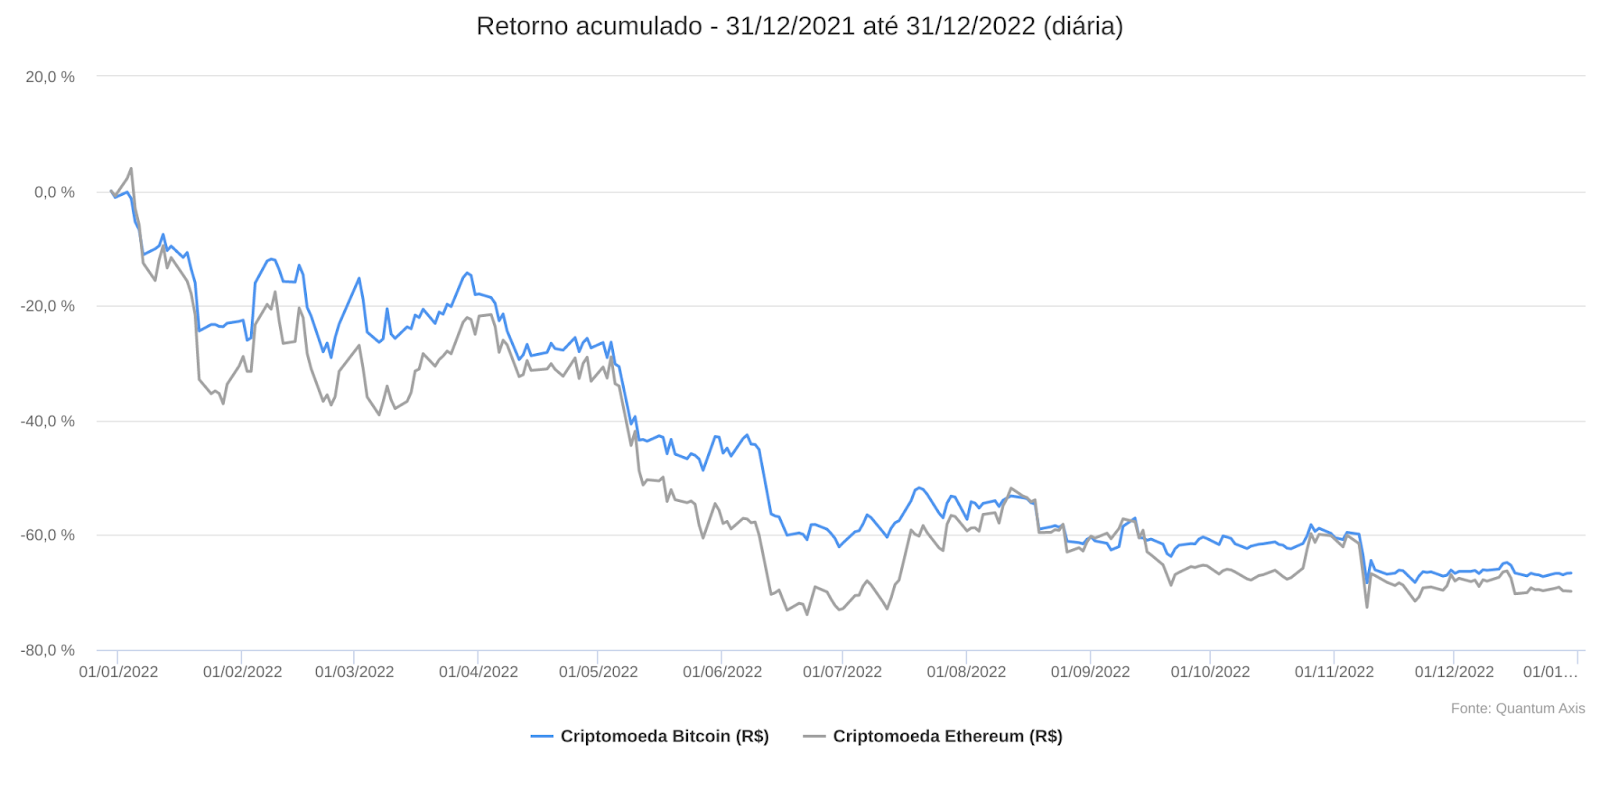 O gráfico mostra a trajetória de queda do Bitcoin e do Ether em 2022